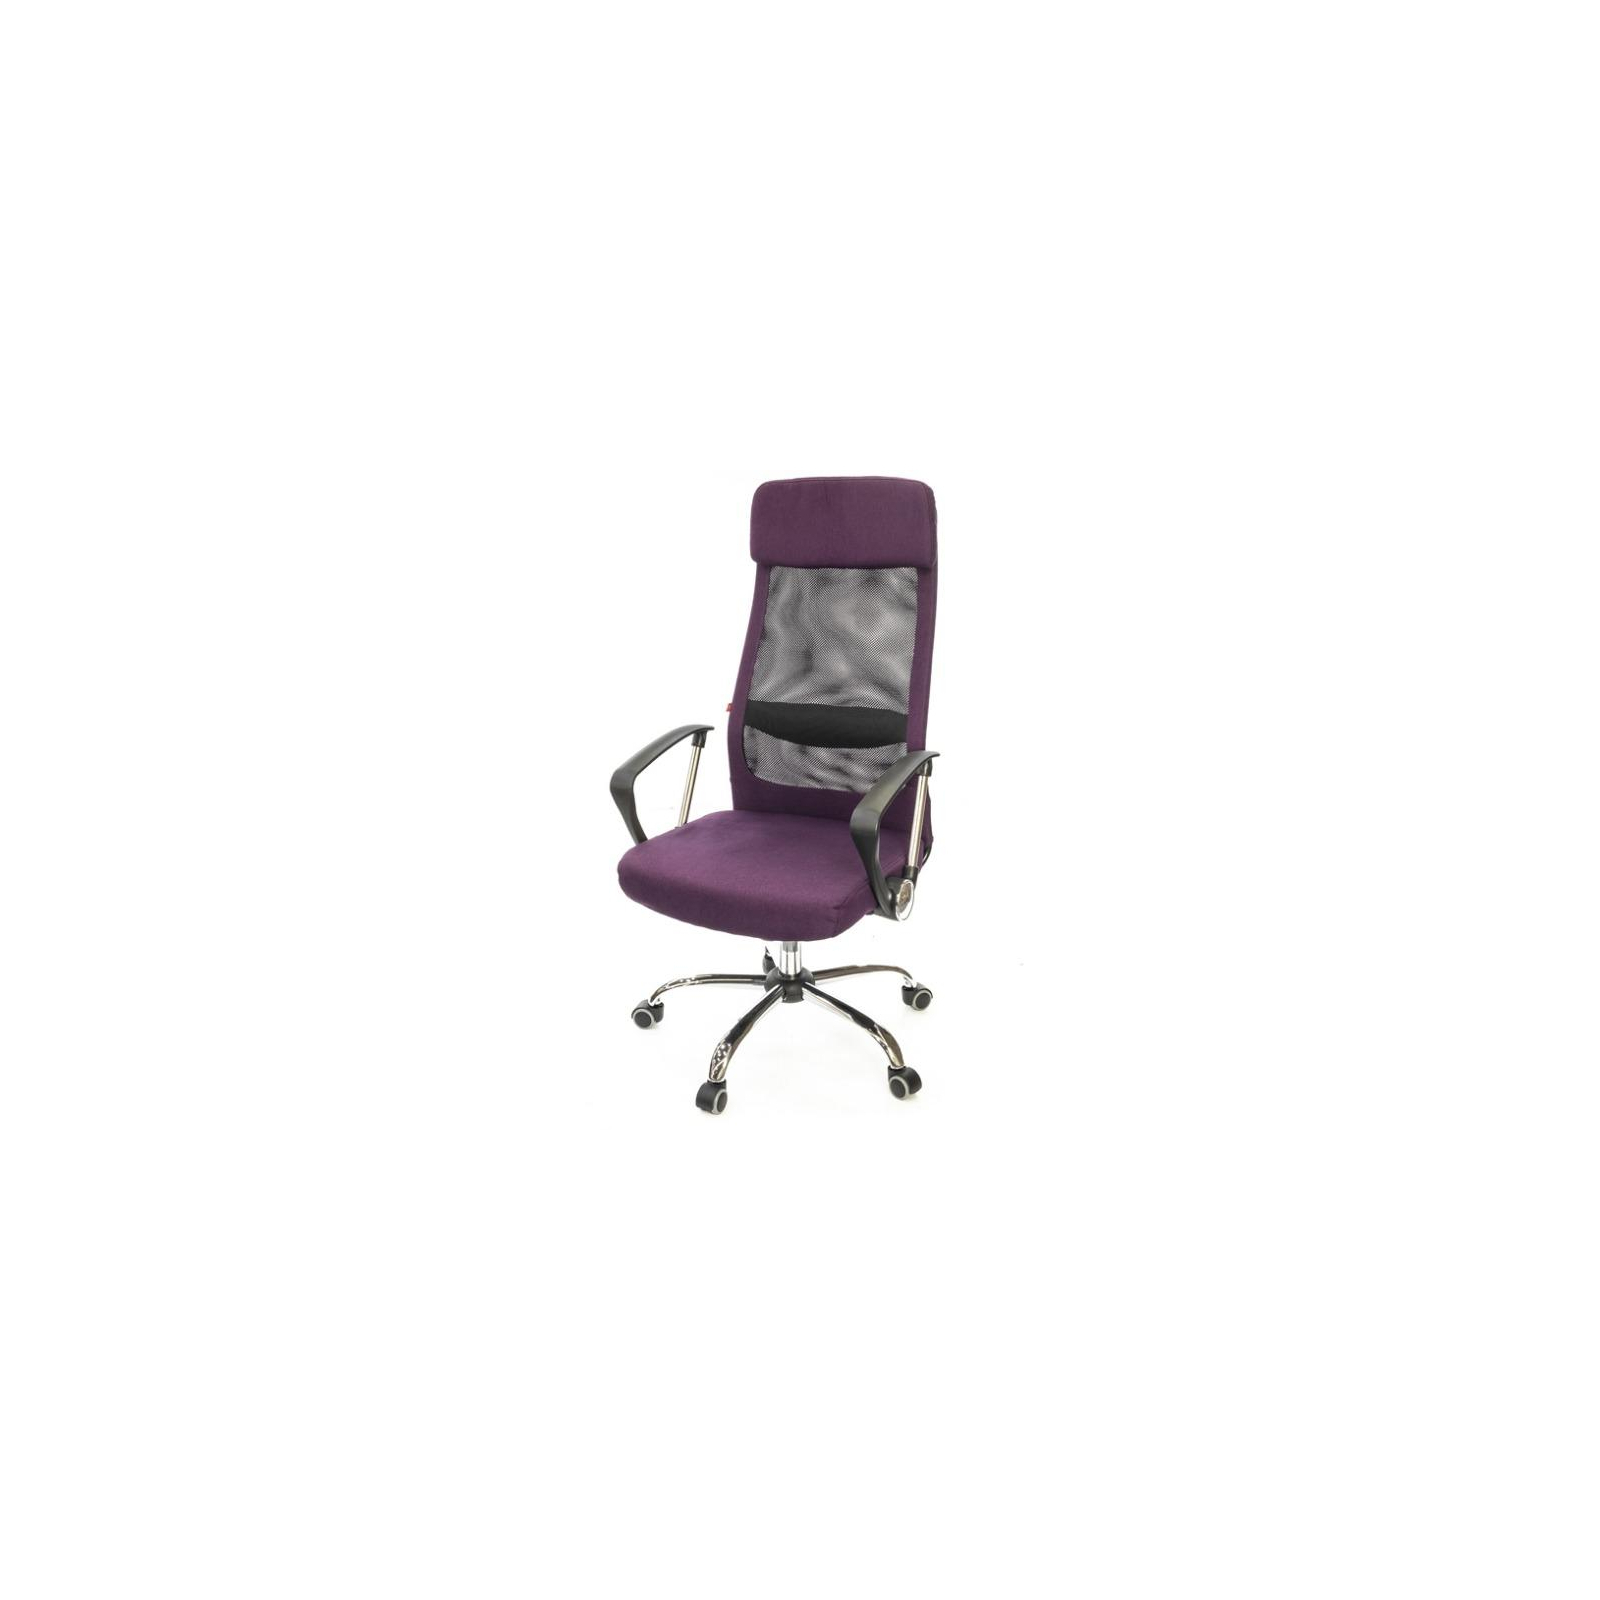 Офисное кресло Аклас Гилмор FX CH TILT Фиолетовое (11873)